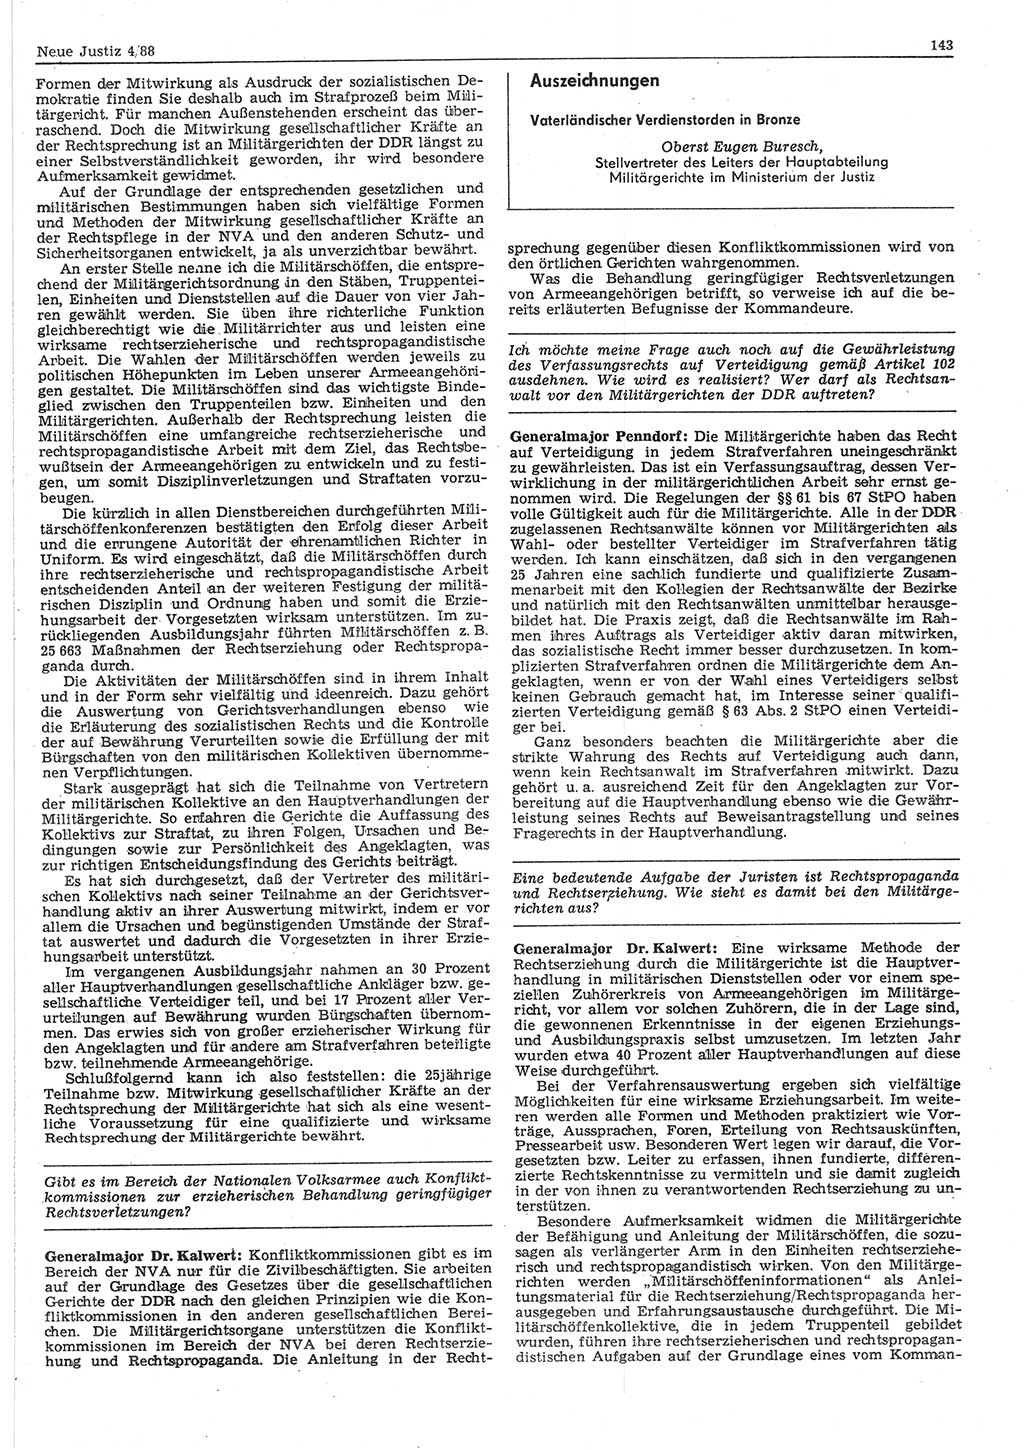 Neue Justiz (NJ), Zeitschrift für sozialistisches Recht und Gesetzlichkeit [Deutsche Demokratische Republik (DDR)], 42. Jahrgang 1988, Seite 143 (NJ DDR 1988, S. 143)